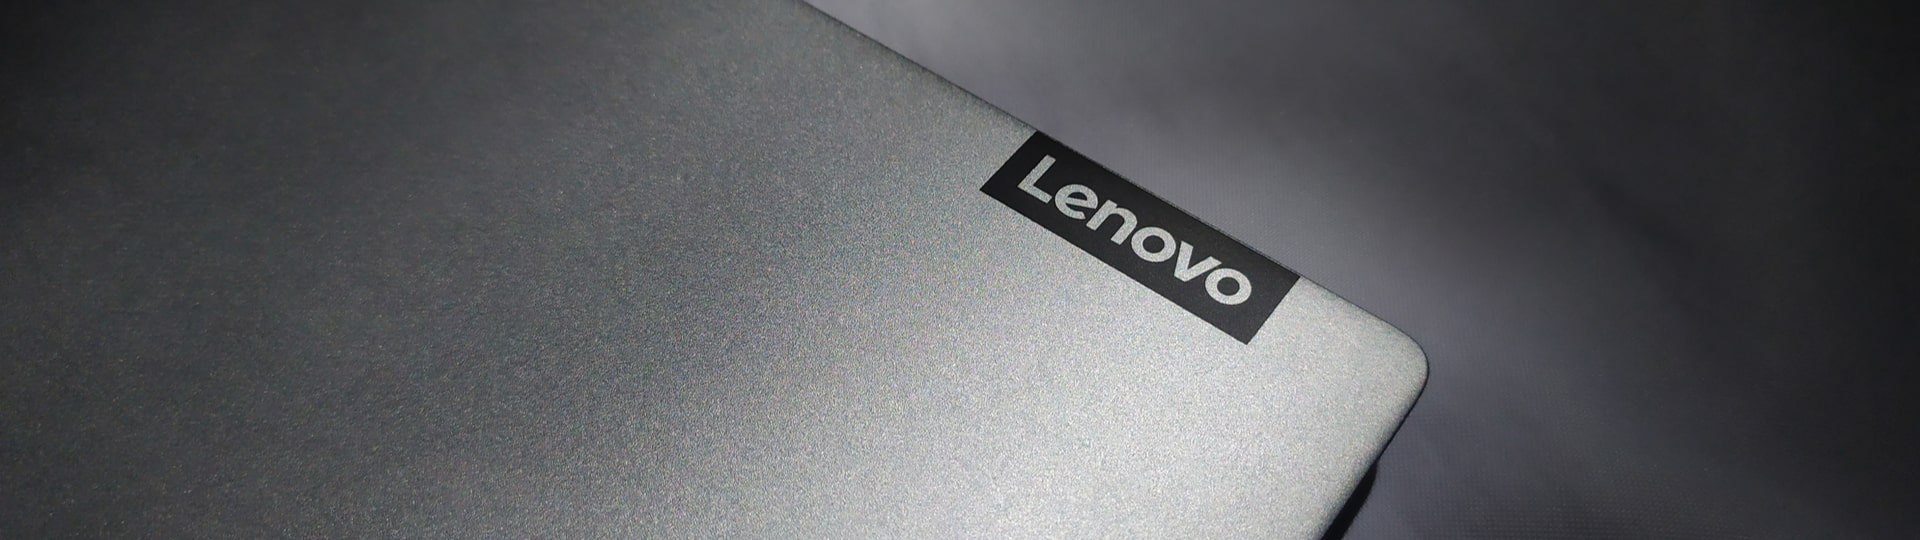 Čistý zisk výrobce počítačů Lenovo stoupl o 65 procent